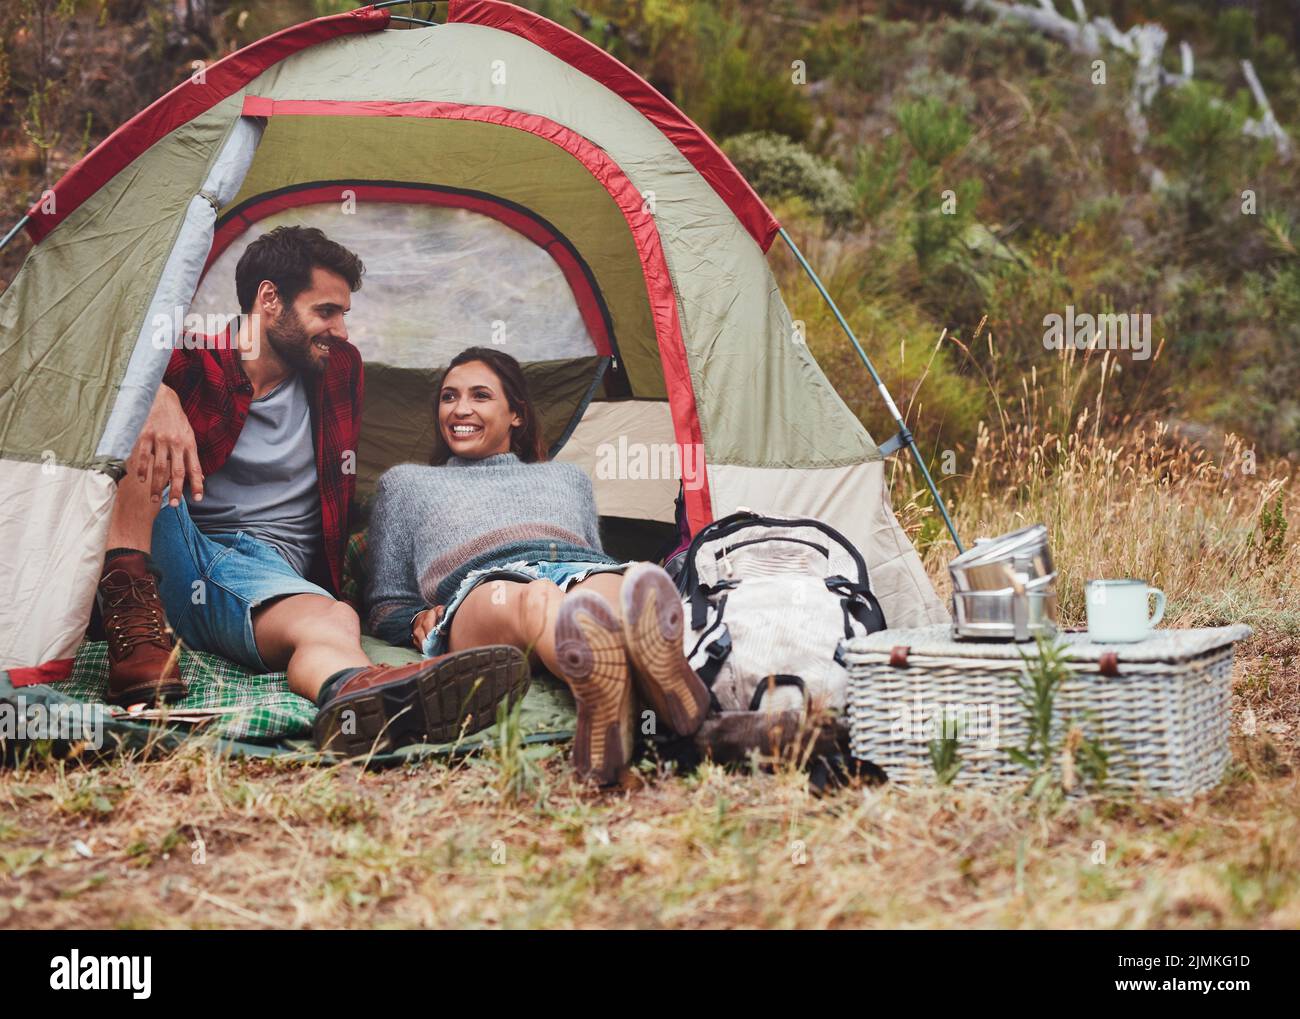 Feliz pareja joven sentada en una tienda de campaña. Pareja alegre disfrutando de sus vacaciones en un camping. Foto de stock